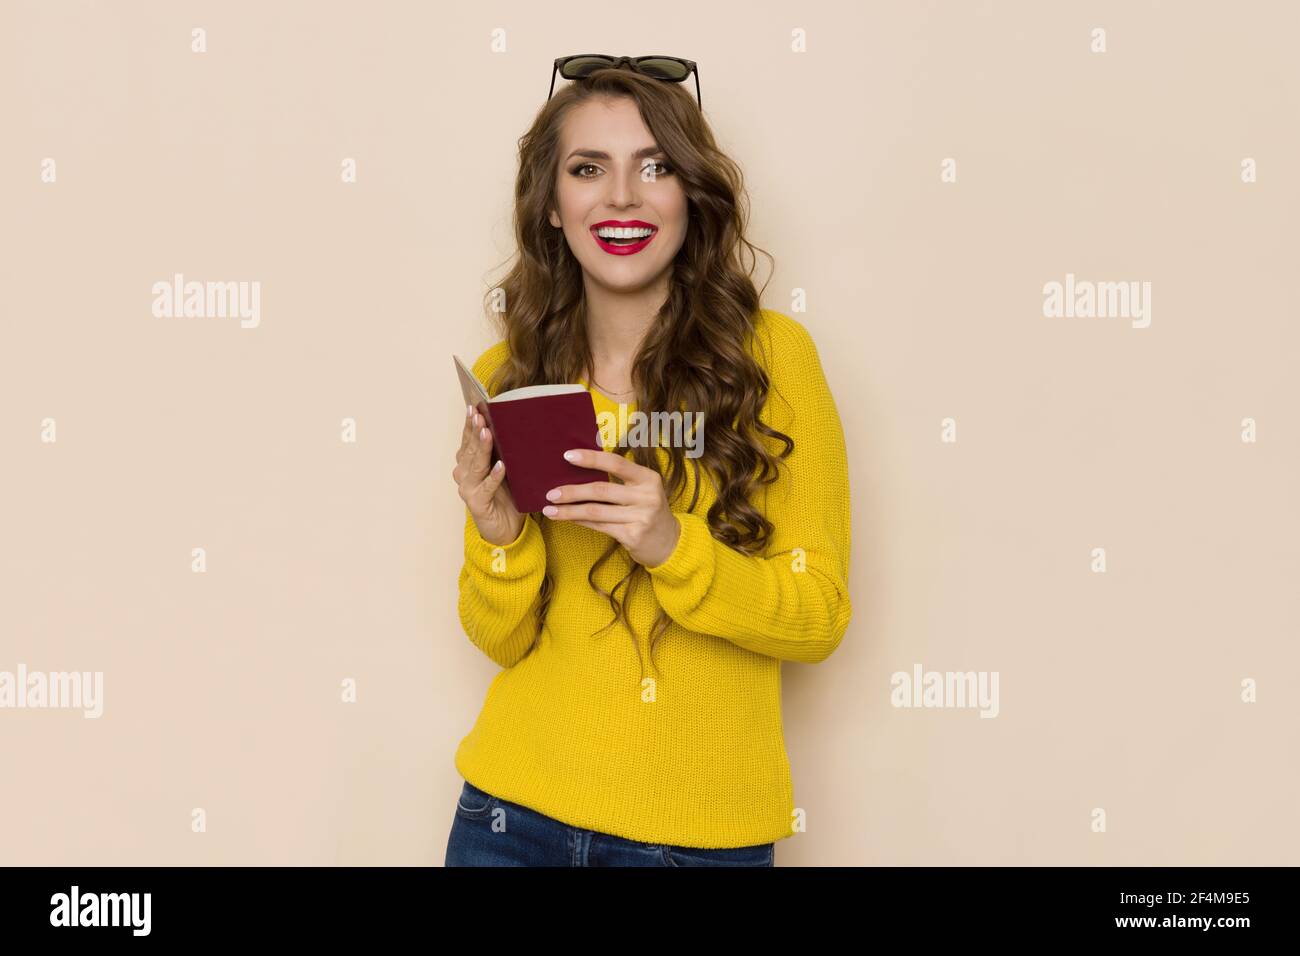 Une jeune femme heureuse en chandail jaune tient un passeport rouge ouvert, regarde la caméra et parle. Taille haute, prise en studio sur fond beige. Banque D'Images